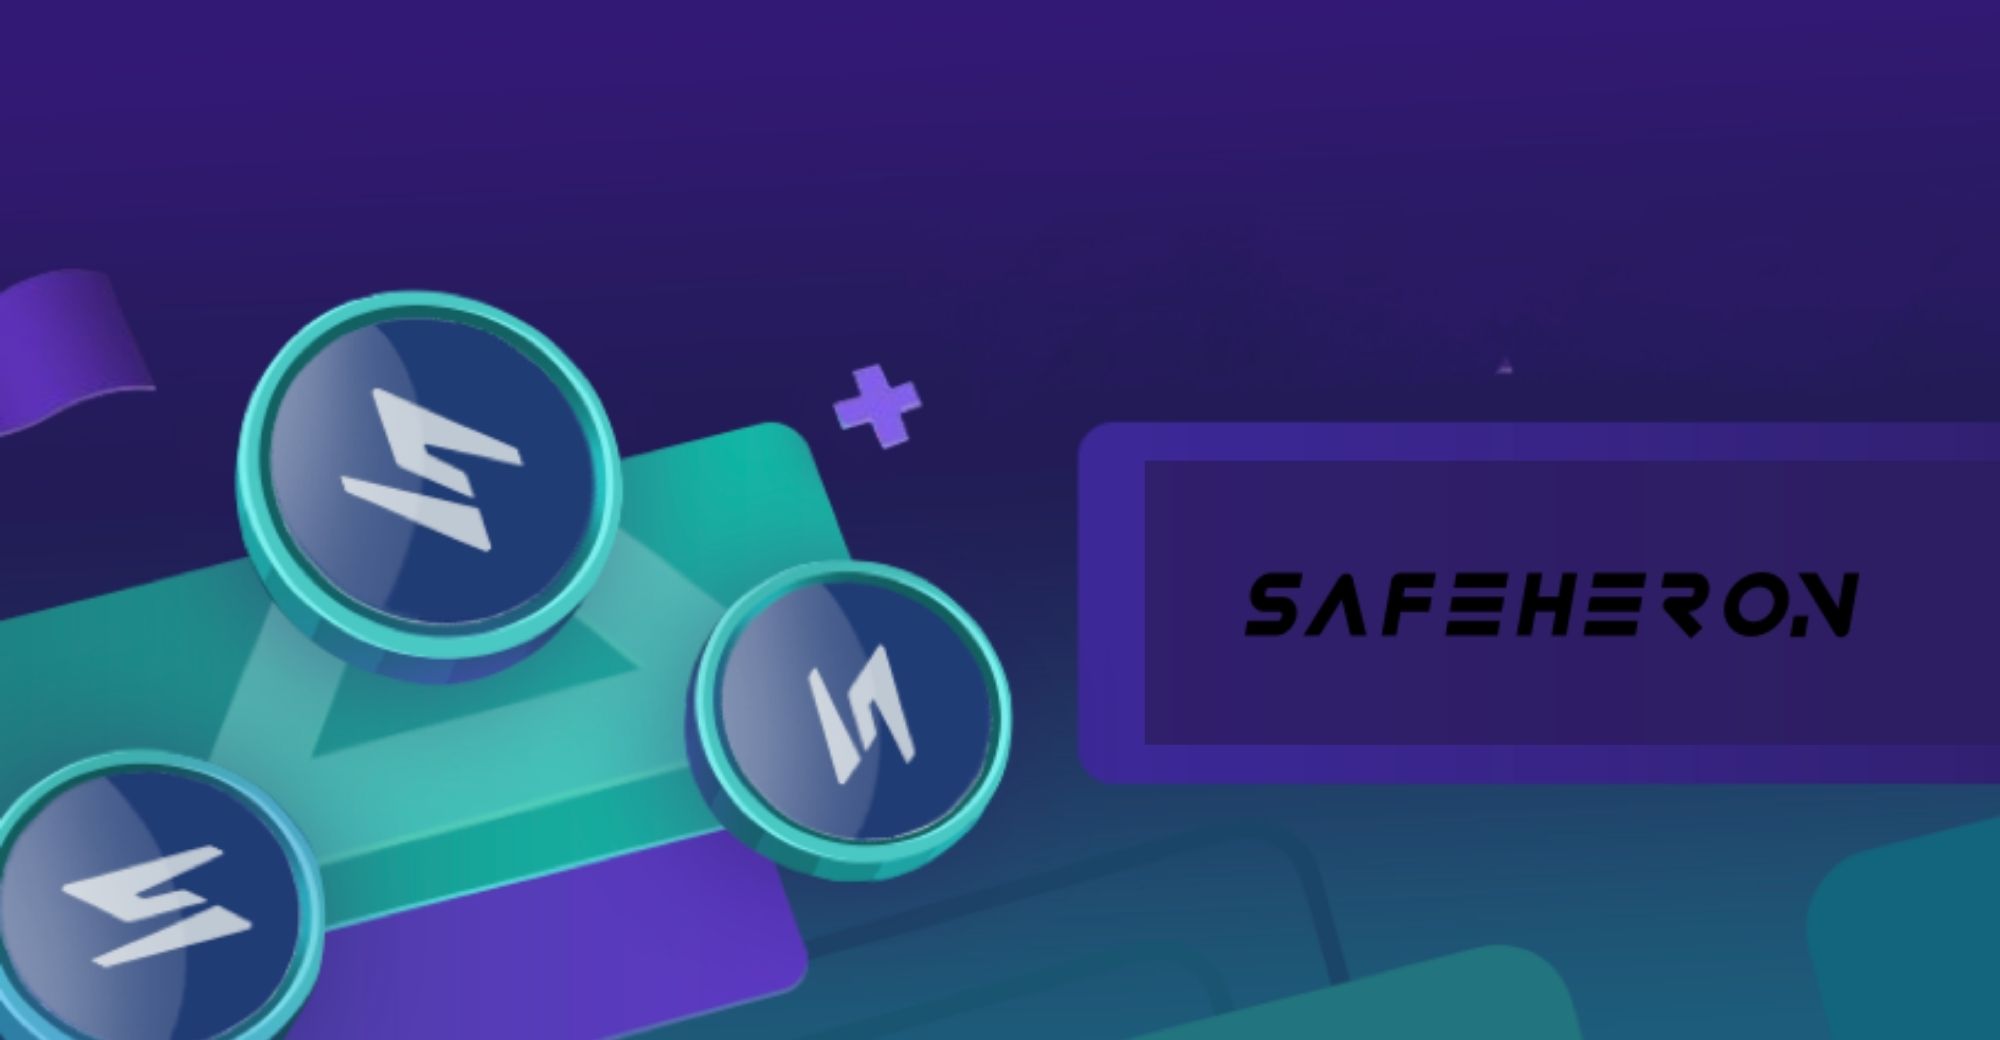 Safeheron $7 मिलियन प्री-ए फंड और मेटामास्क के साथ सहयोग की घोषणा करता है